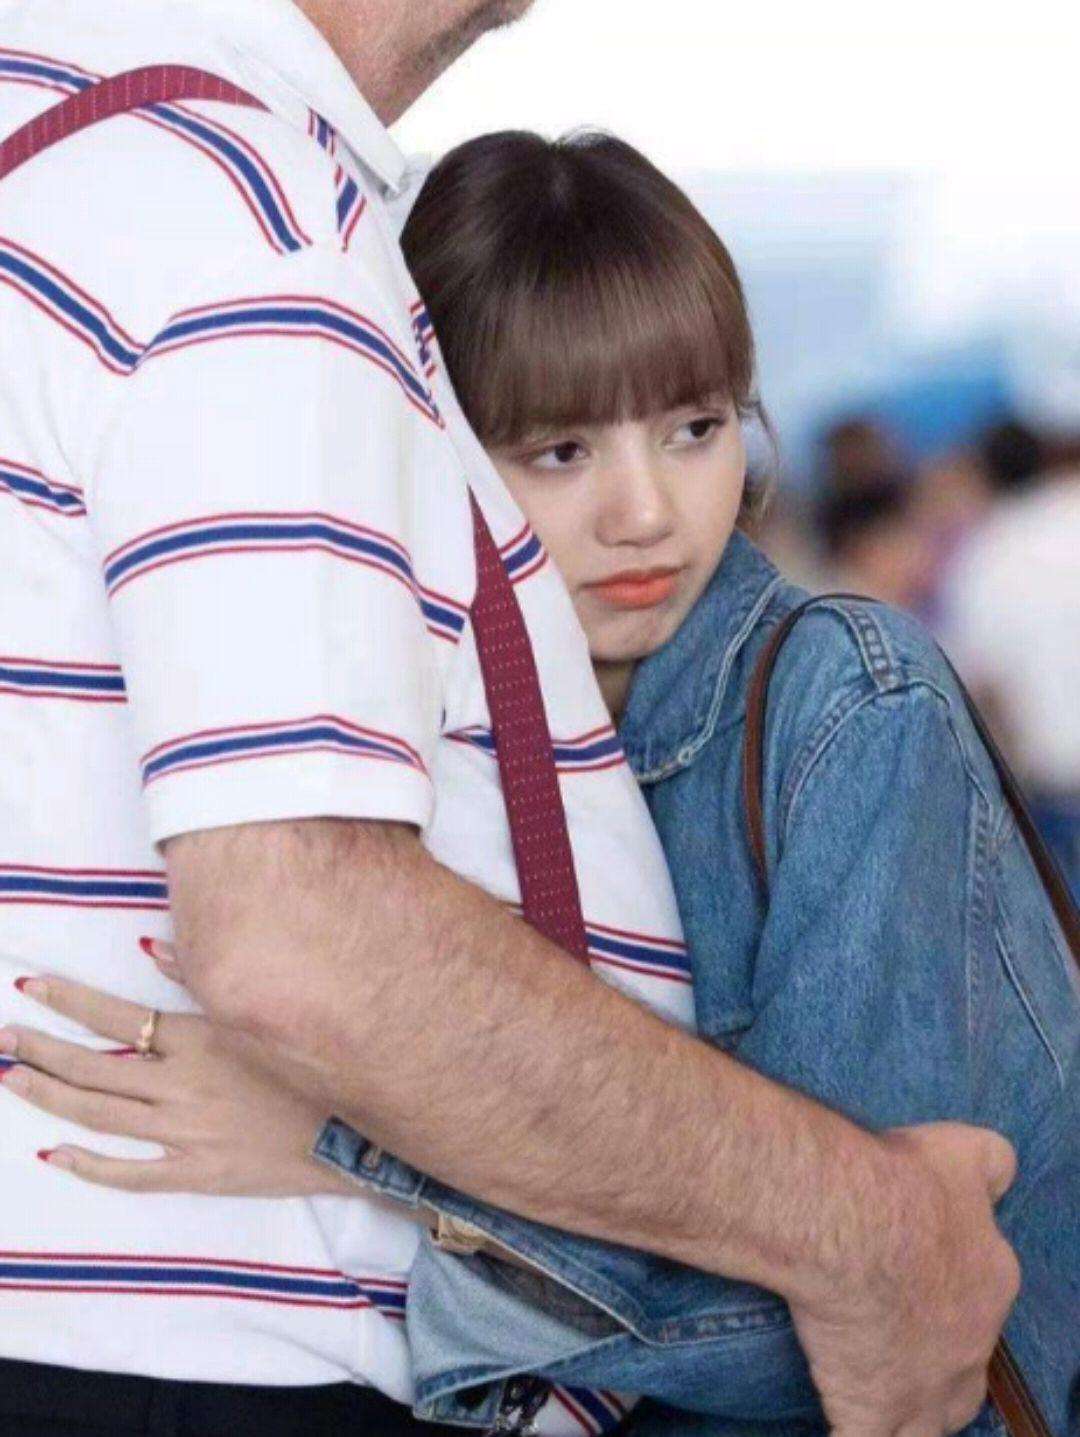 lisa是泰国和哪的混血，lisa父亲不是亲生的吗？Lisa机场拥抱的大熊般的父亲实际是她继父？